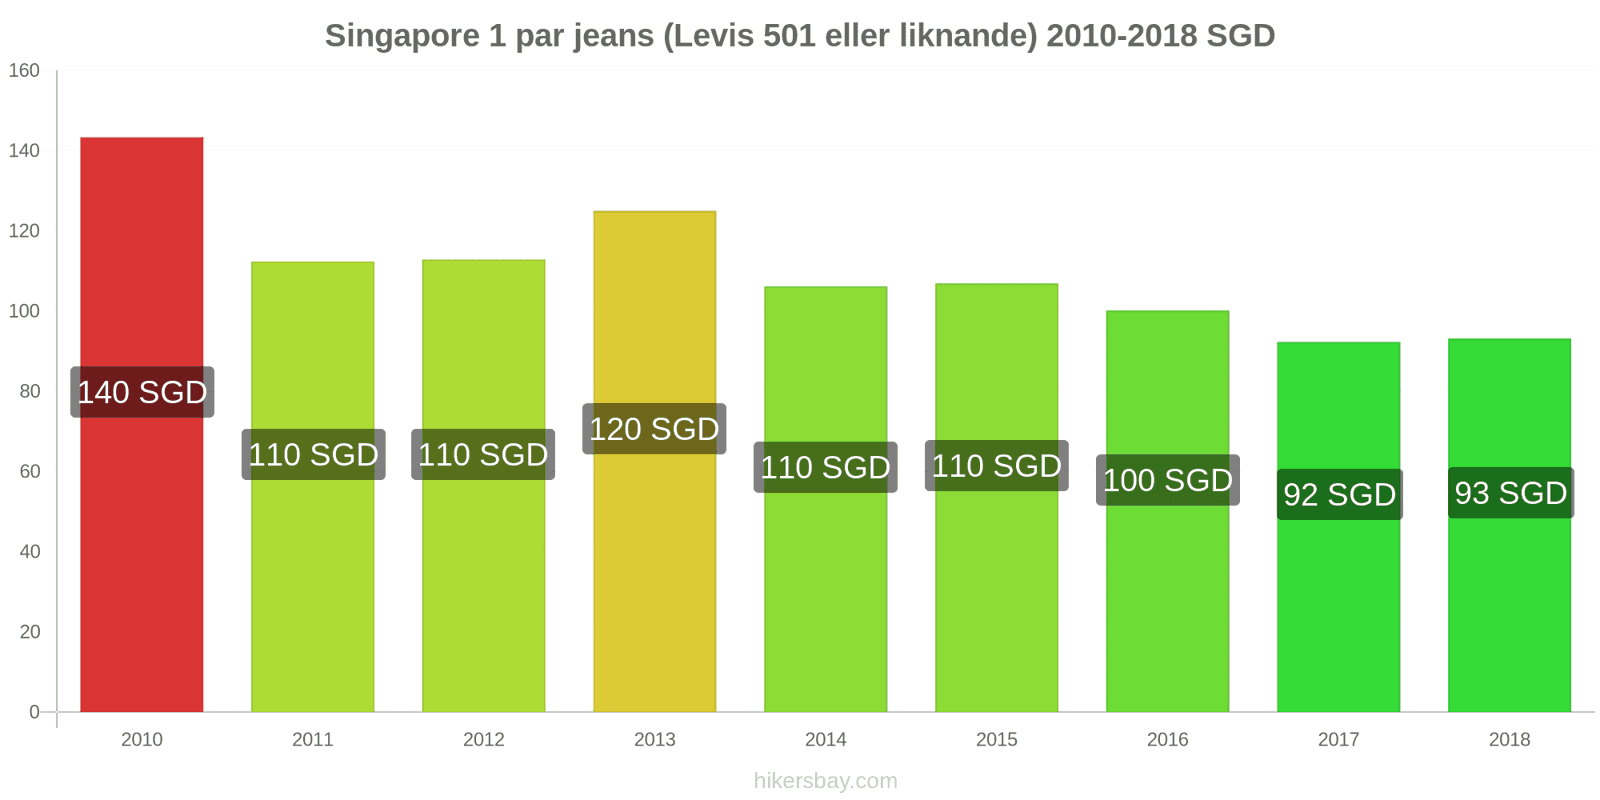 Singapore prisändringar 1 par jeans (Levis 501 eller liknande) hikersbay.com